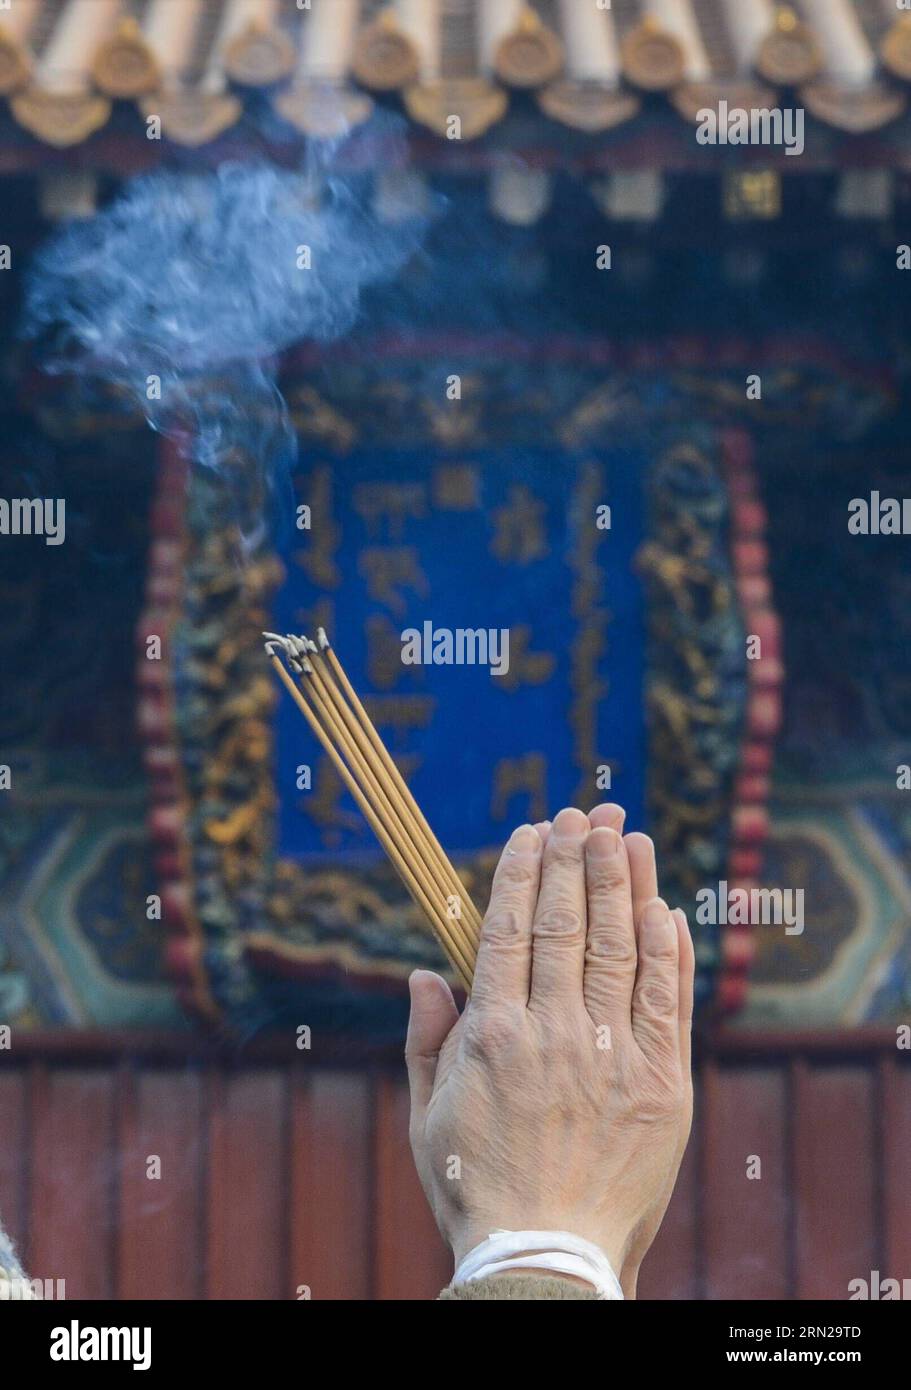 (150219) -- PECHINO, 19 febbraio 2015 -- Un cittadino brucia incensi per una preghiera al Tempio dei Lama Yonghegong a Pechino, capitale della Cina, 19 febbraio 2015. Decine di migliaia di persone hanno pregato per la buona fortuna nel tempio il giovedì, il primo giorno del Capodanno lunare cinese. ) (hdt) CHINA-BEIJING-YONGHEGONG LAMA TEMPLE-NEW YEAR PRAYER (CN) QixHeng PUBLICATIONxNOTxINxCHN Pechino 19 febbraio 2015 un cittadino brucia l'incenso per una preghiera AL tempio Yonghegong Lama di Pechino capitale della Cina 19 febbraio 2015 decine di millenni di celebrità per buona fortuna nel tempio giovedì primo giorno di cinese Lunar nuovo Foto Stock